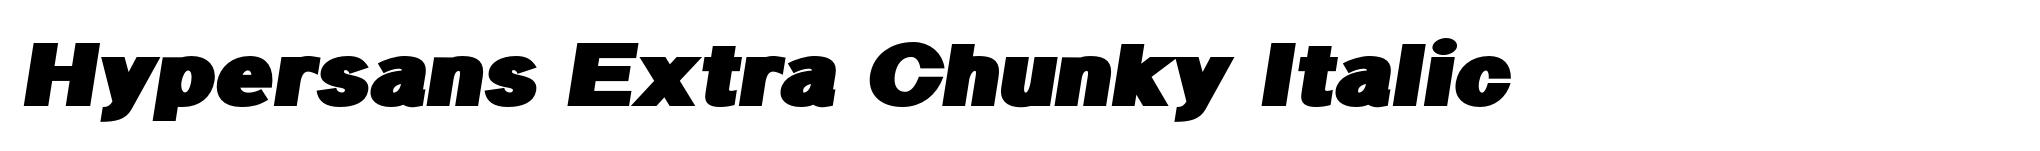 Hypersans Extra Chunky Italic image